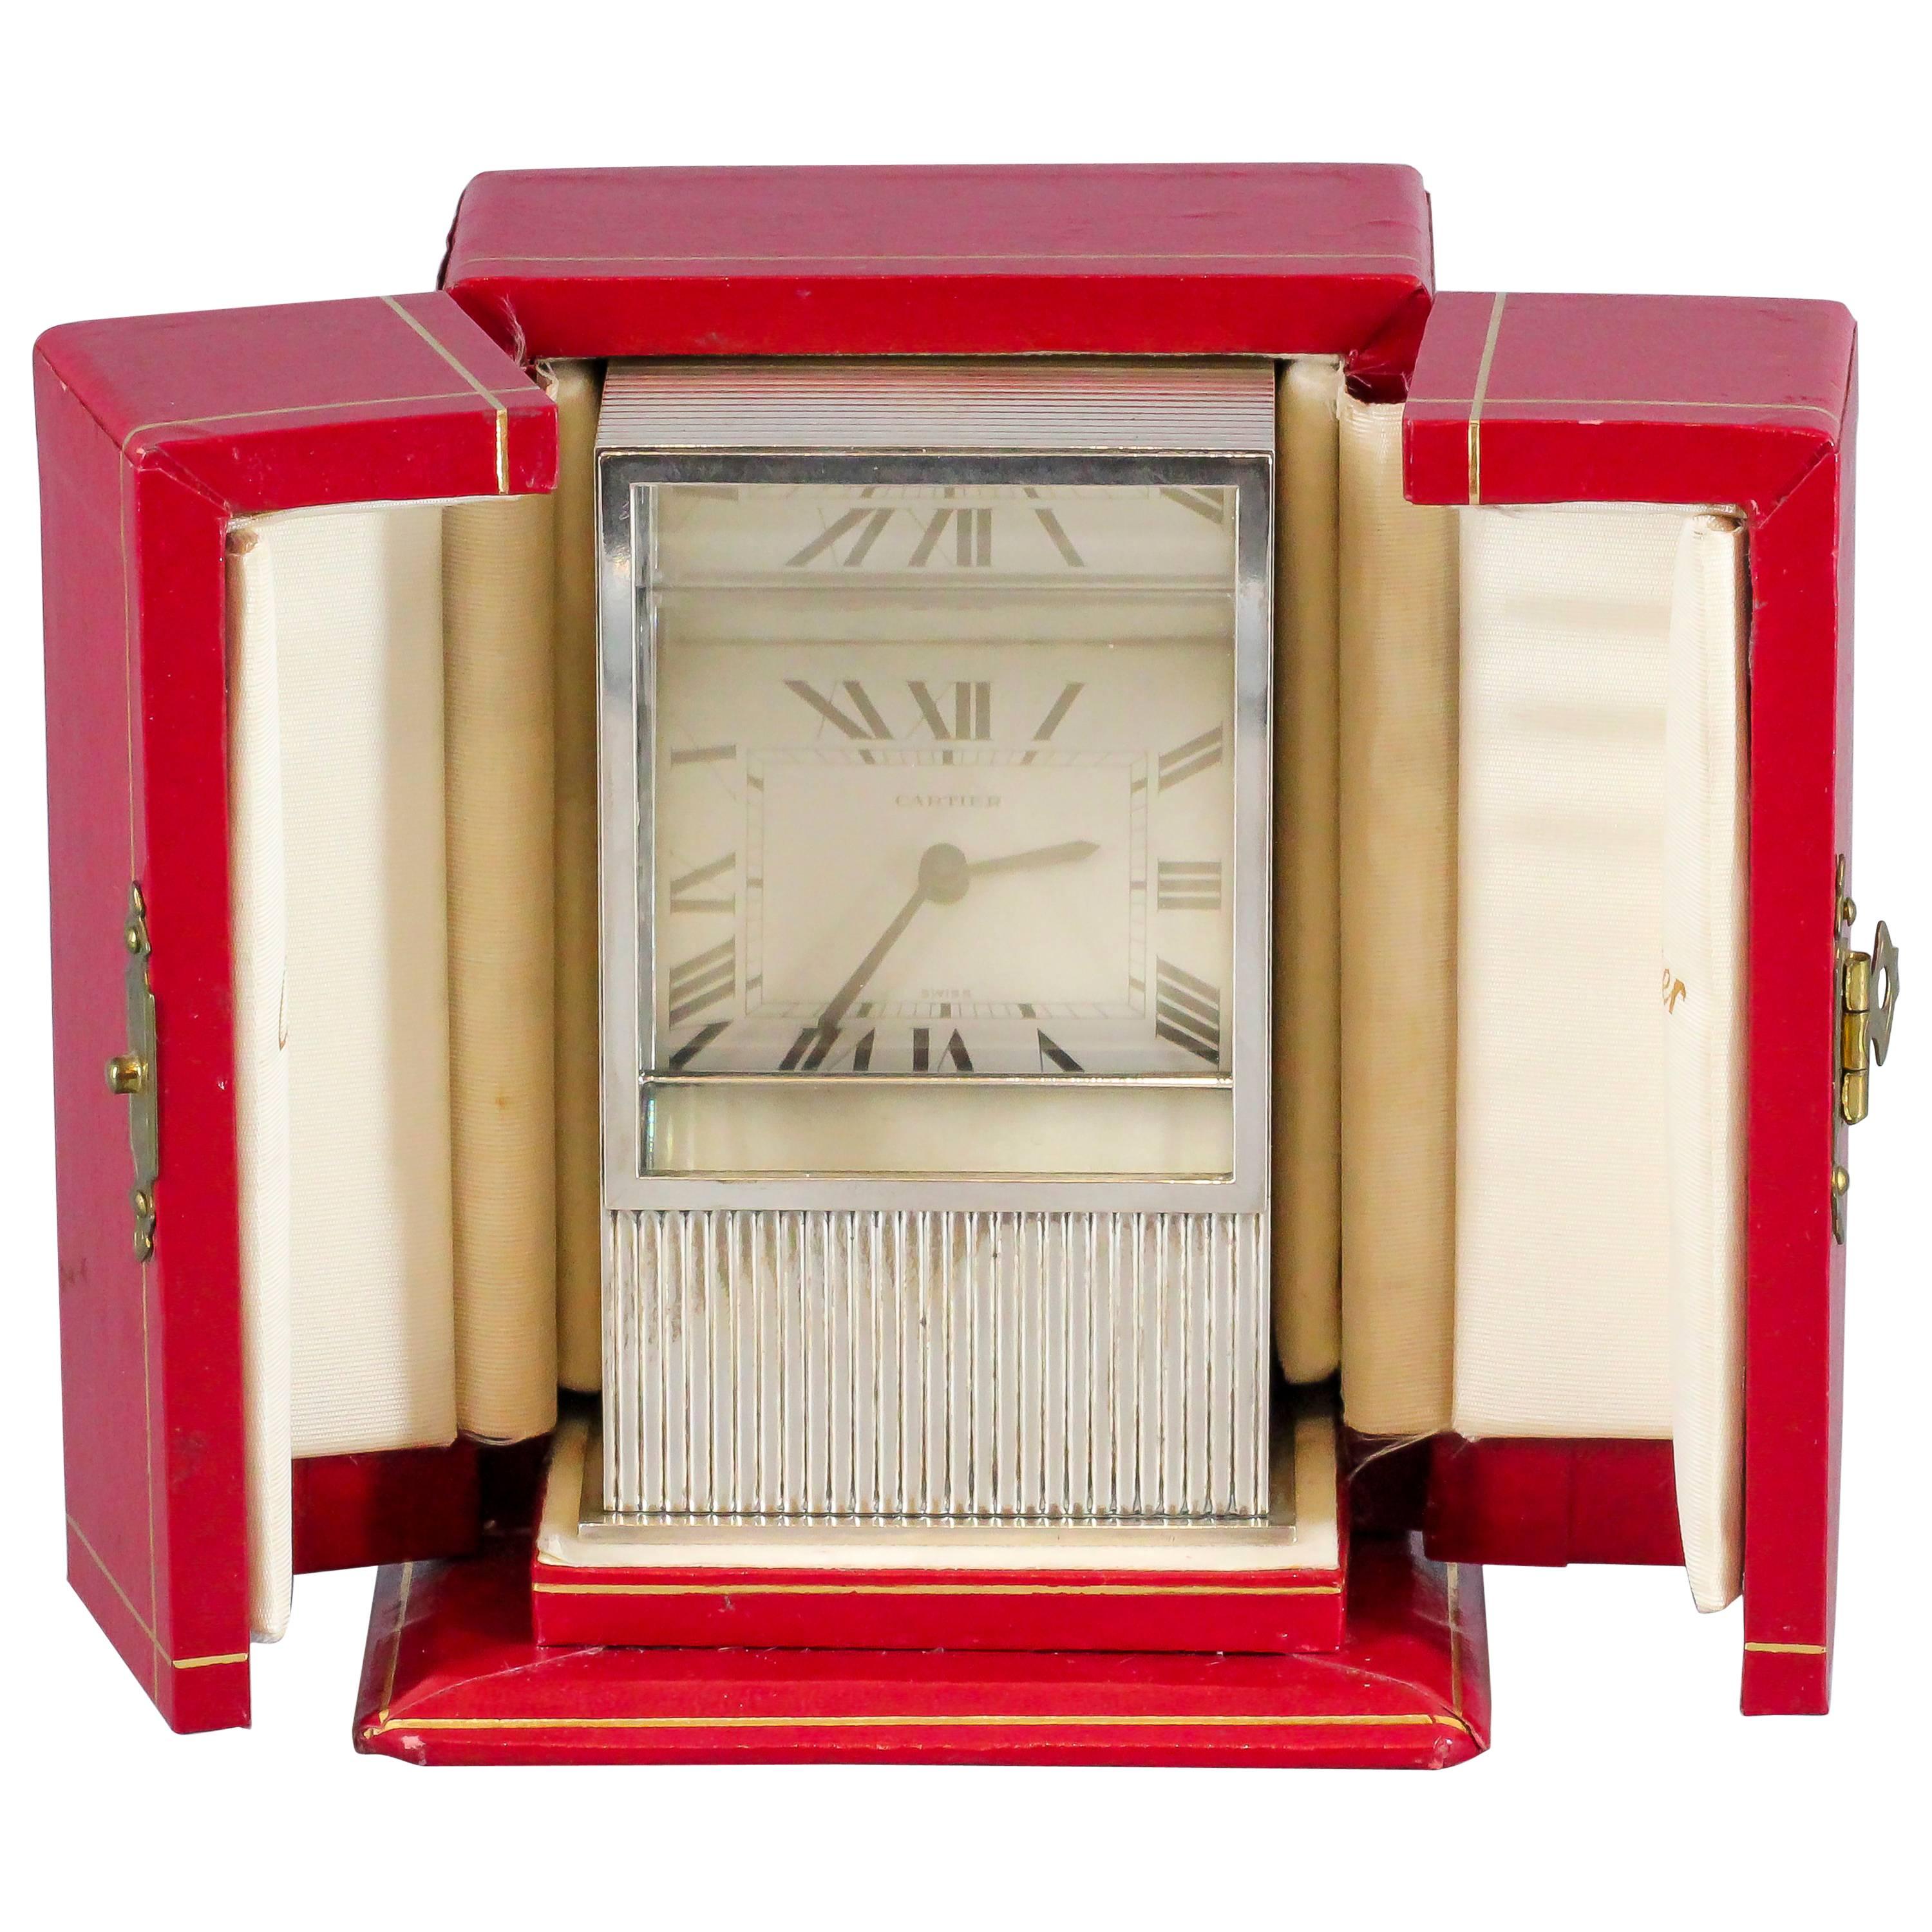 Enthüllung der Zeit: Eine seltene Cartier Mystery Prism Sterling Silber Uhr (CIRCA 1980s)

In dieser fesselnden Cartier Mystery Prism Uhr, einer echten Rarität aus den 1980er Jahren, treffen Intrige und Eleganz aufeinander. Dieser exquisite